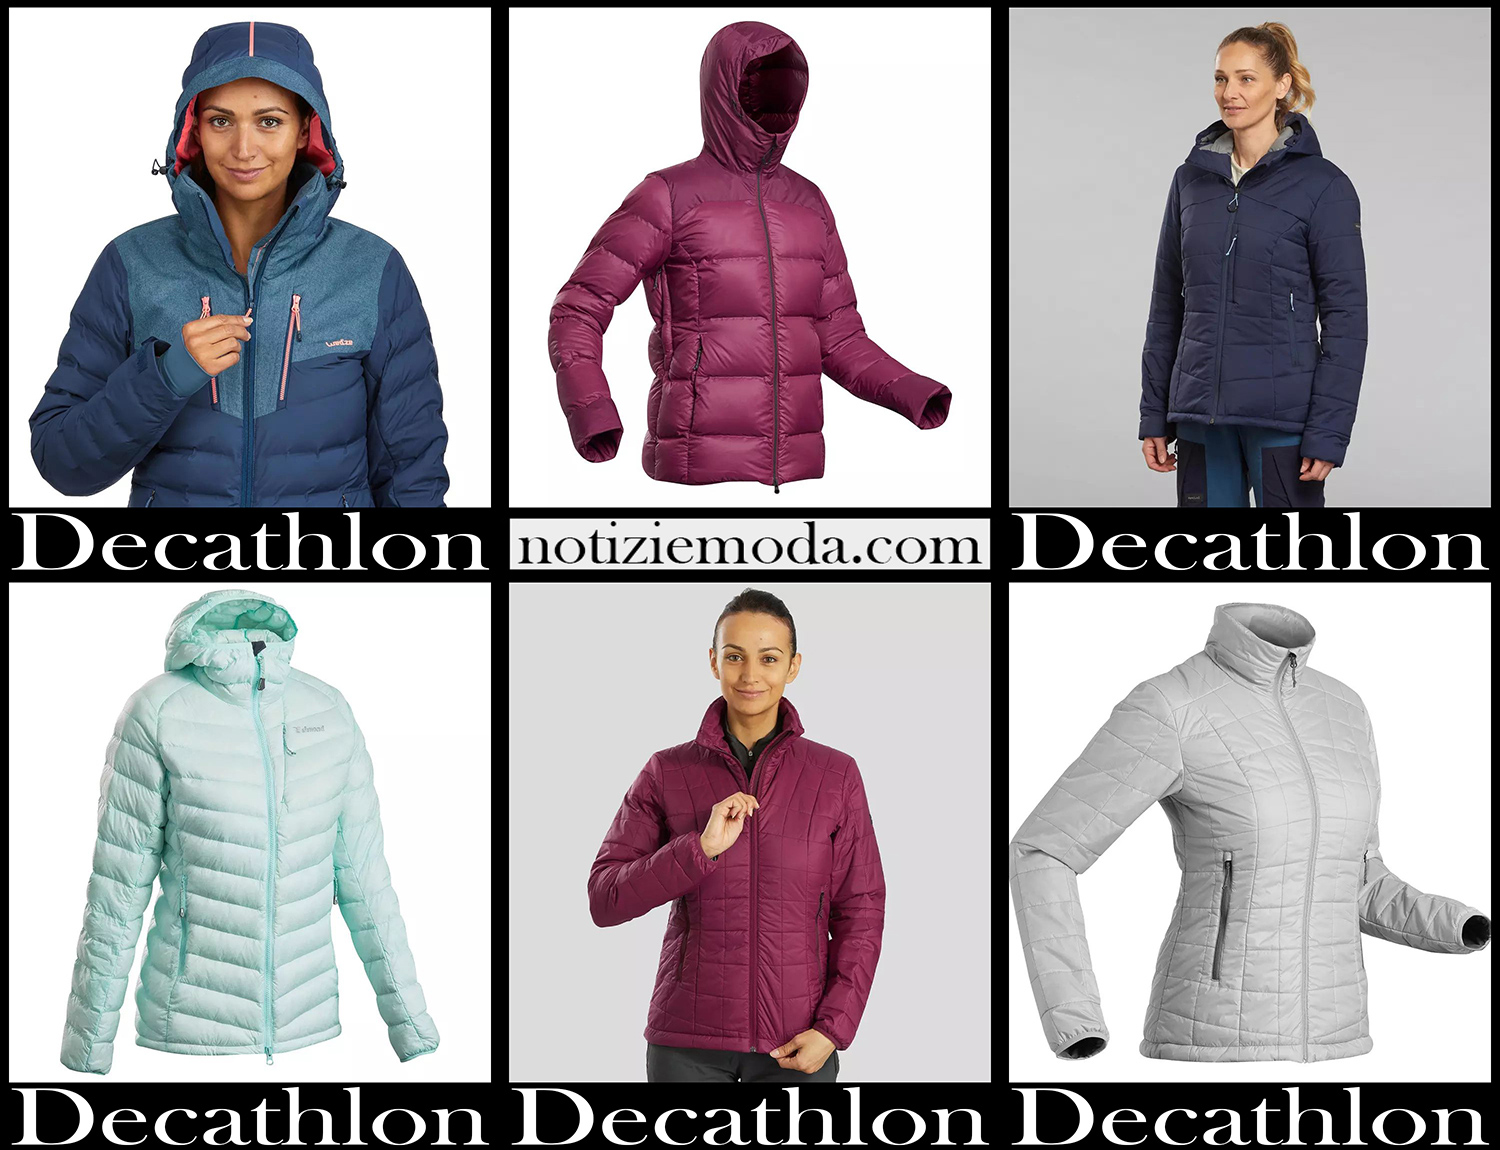 Piumini Decathlon 20 2021 autunno inverno moda donna